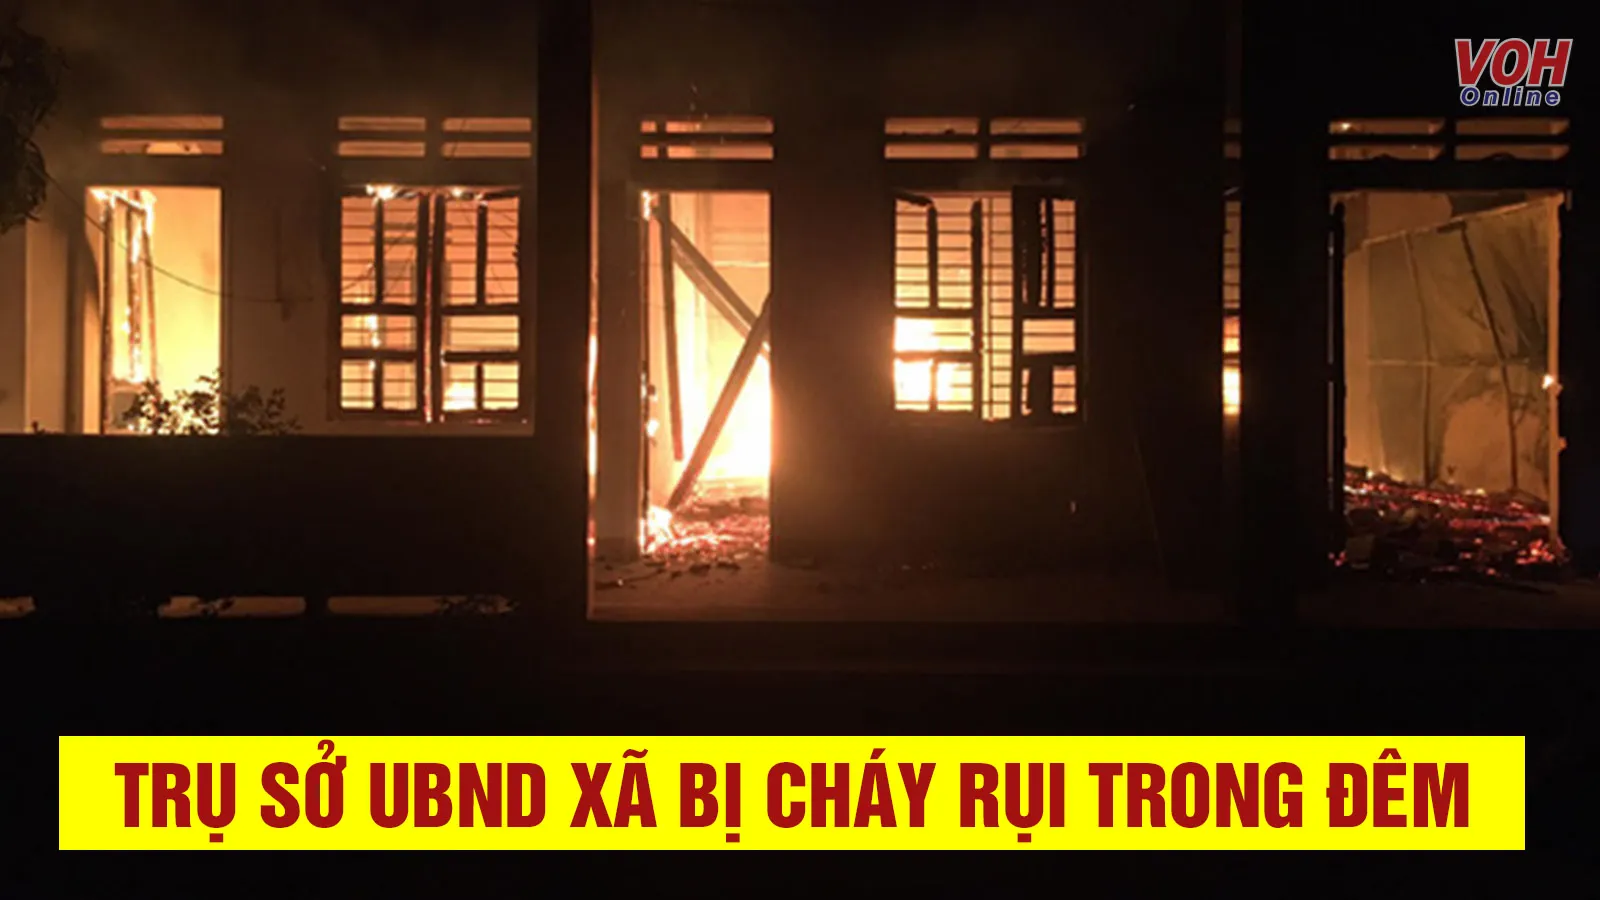 Tin nhanh trưa 30/6: Trụ sở UBND xã ở Quảng Nam bị lửa thiêu rụi trong đêm